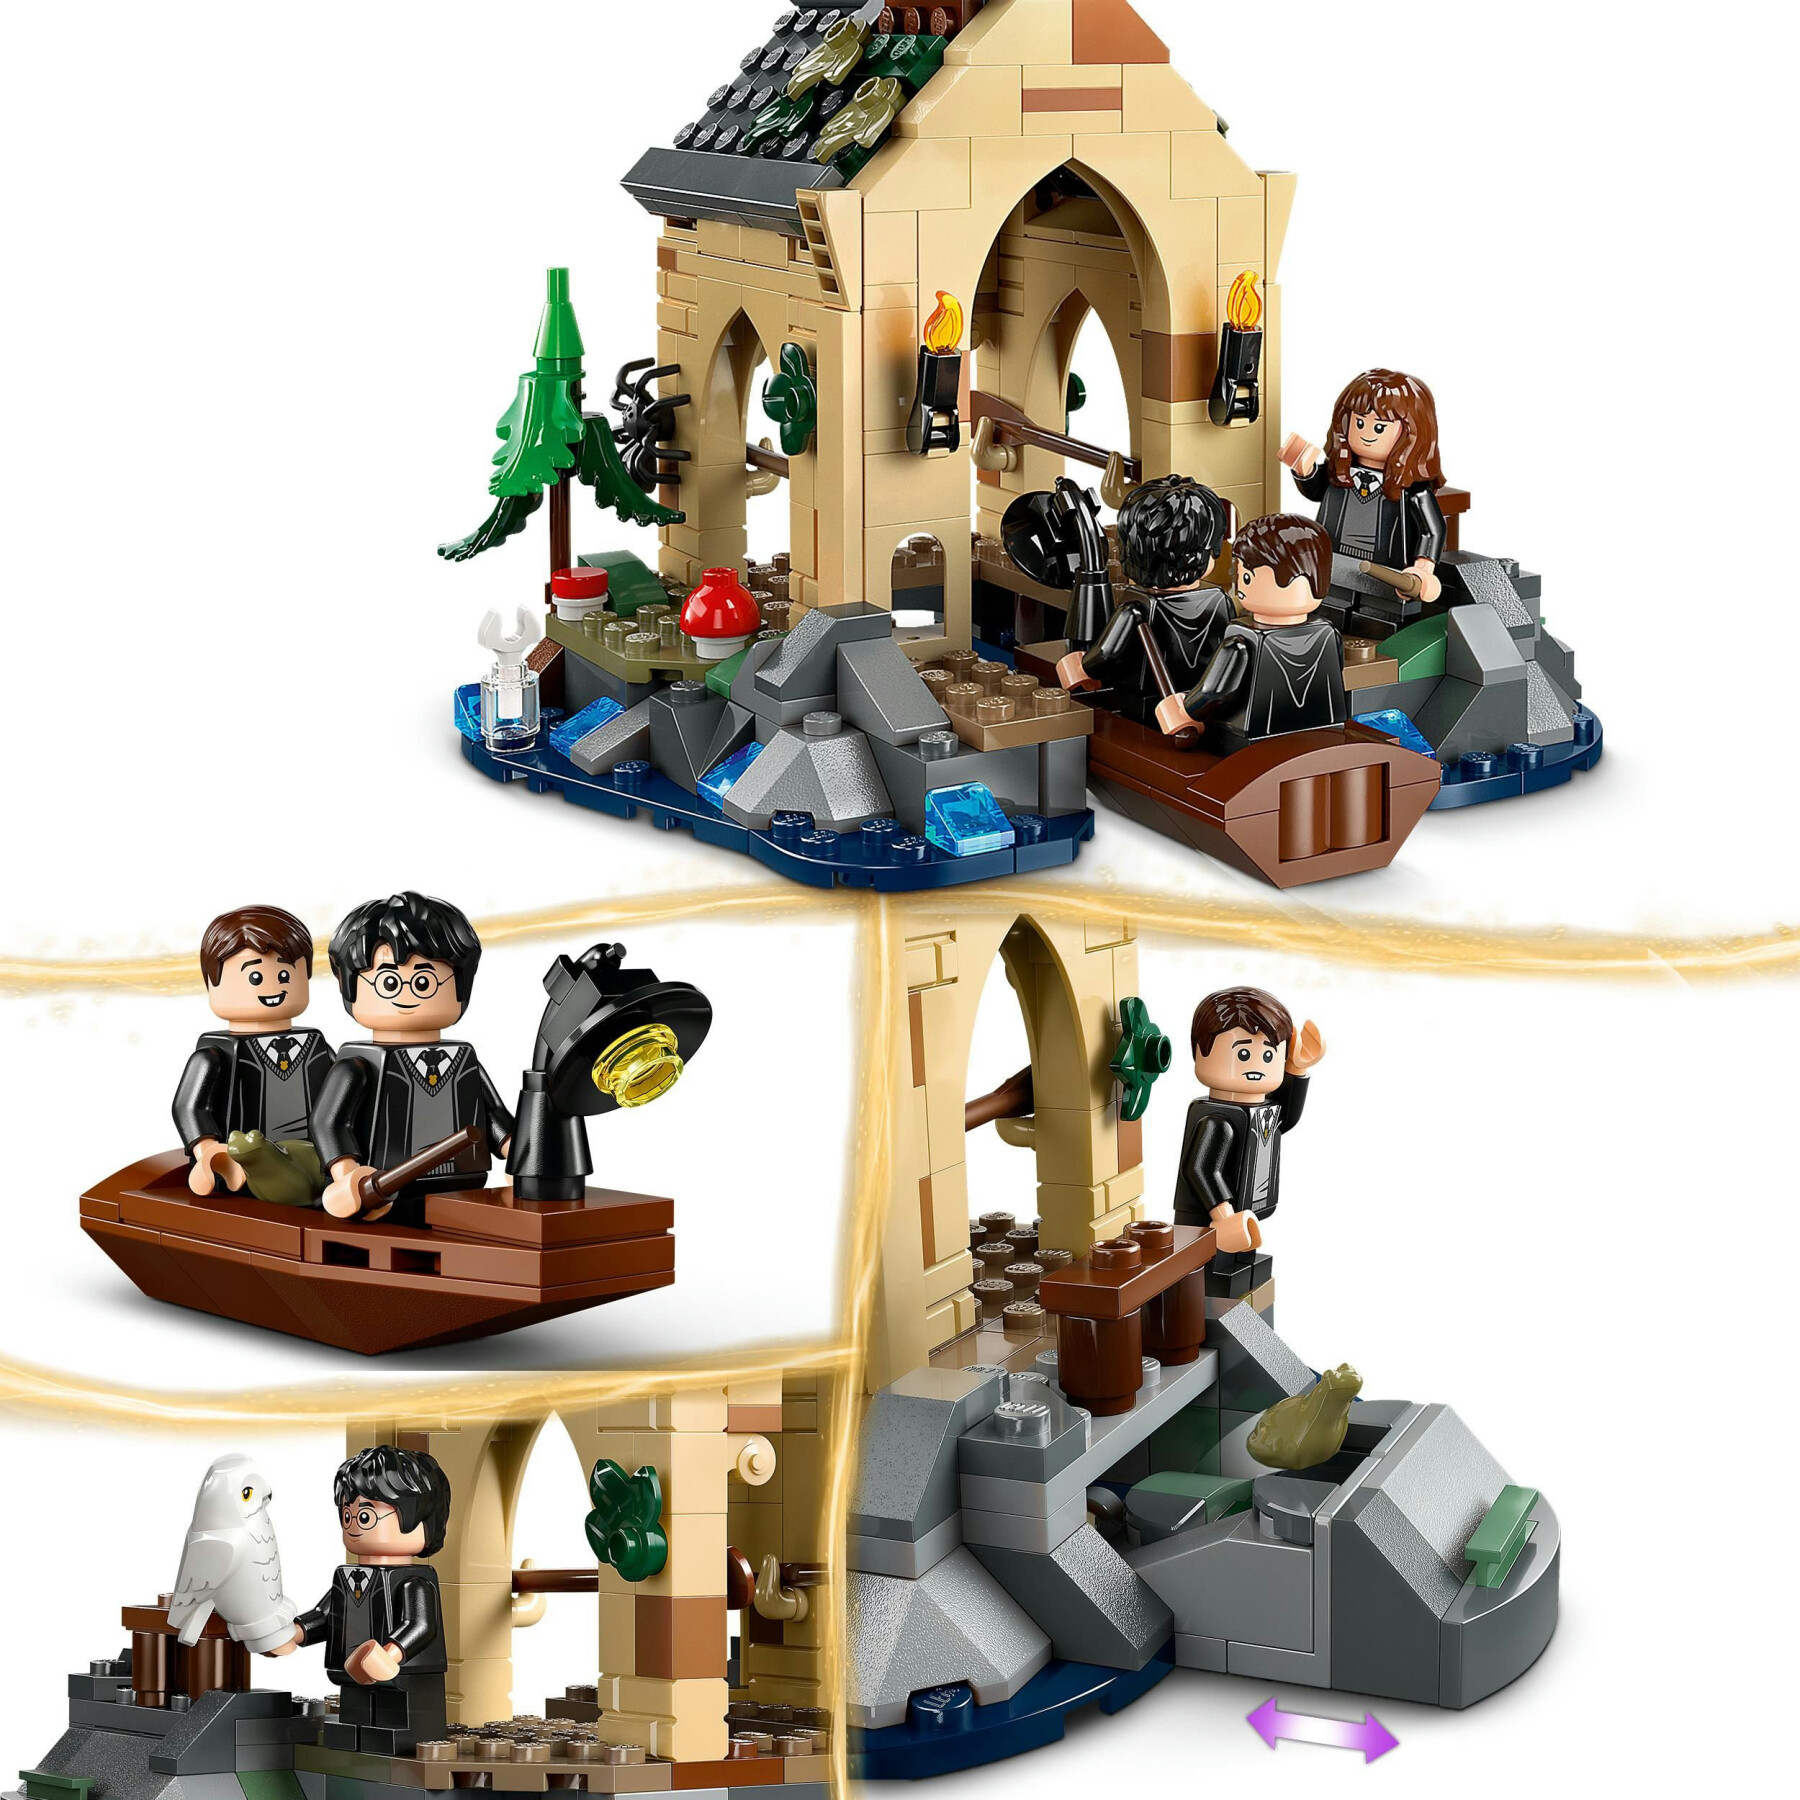 Lego harry potter 76426 la rimessa per le barche del castello di hogwarts, gioco per bambini di 8+ anni con 5 minifigure - Harry Potter, LEGO® Harry Potter™